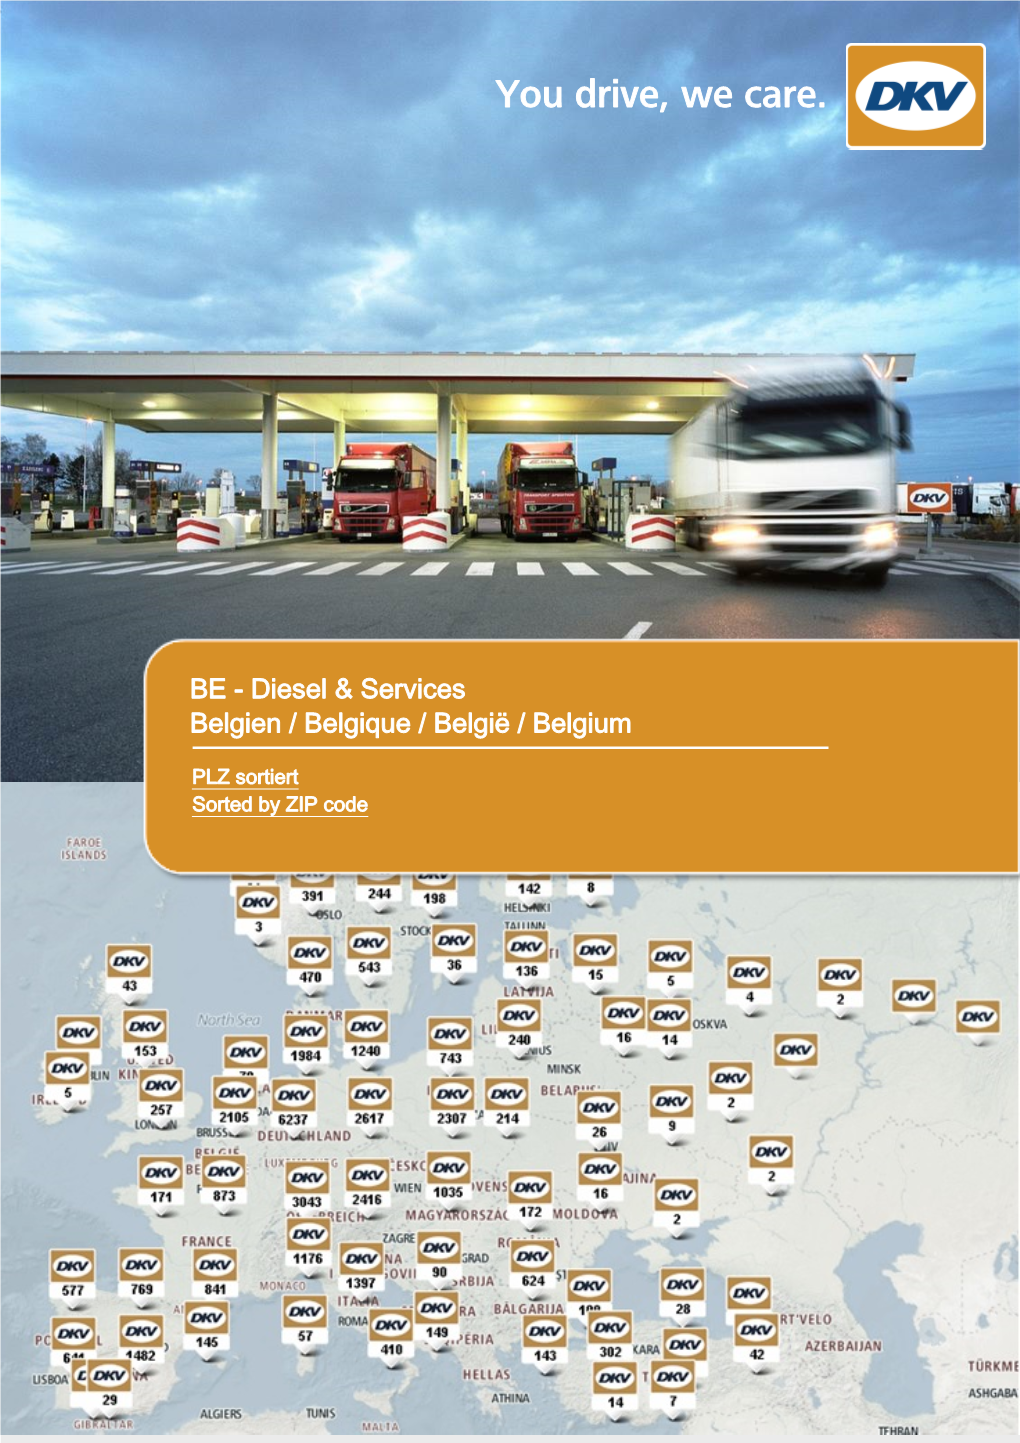 BE - Diesel & Services Belgien / Belgique / België / Belgium